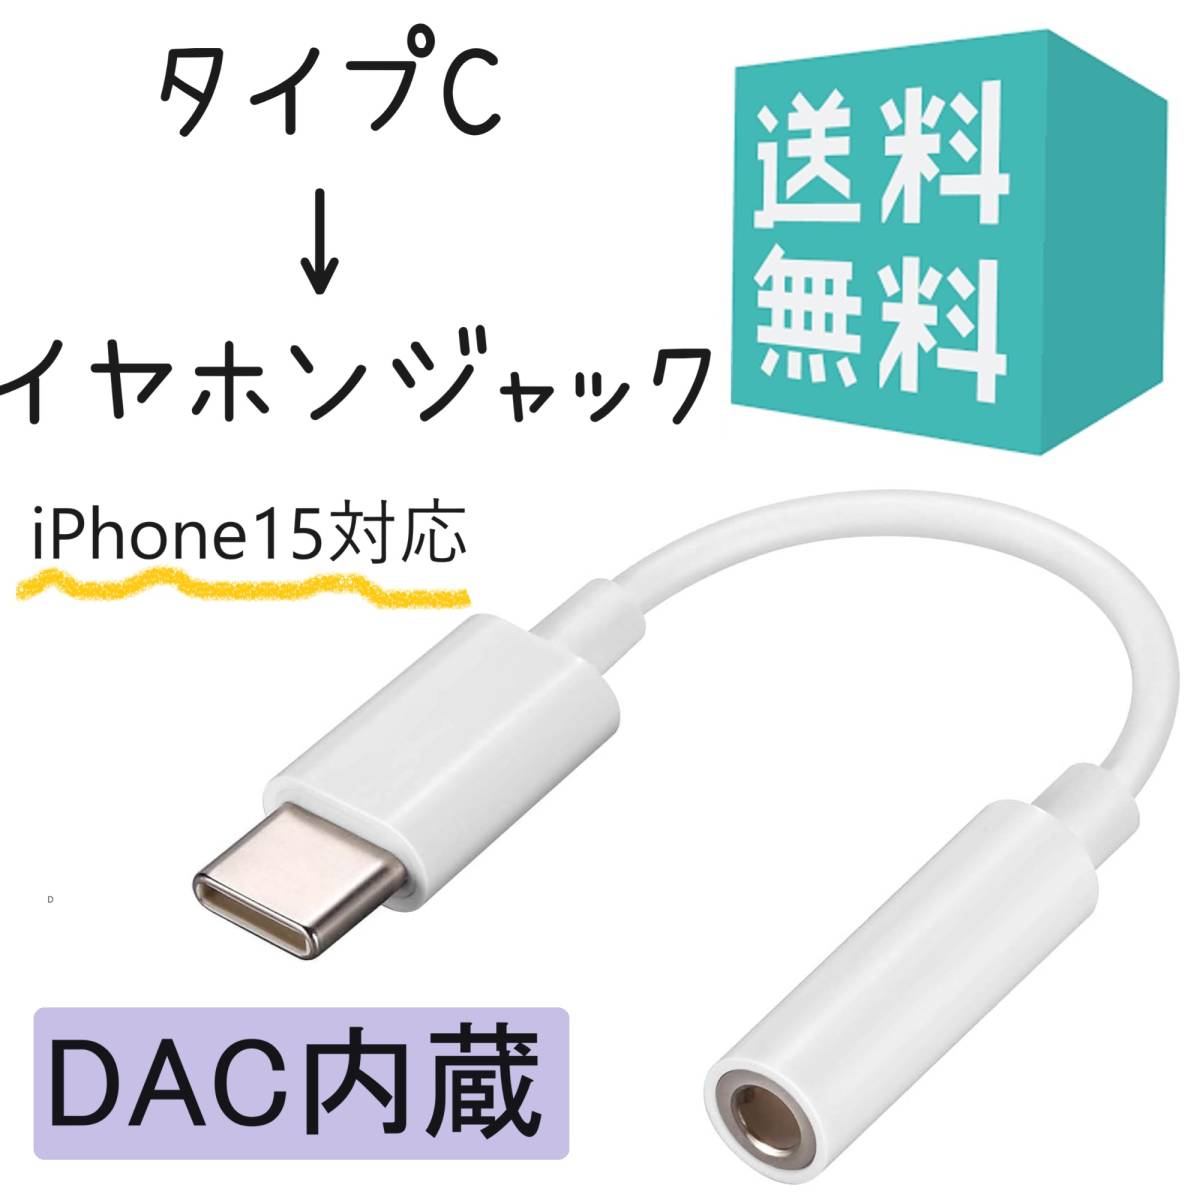 タイプC イヤホンジャック 変換 DAC内蔵 iPhone15対応 USB-C to イヤホン変換 3.5mm ケーブル iPad Pro_画像1